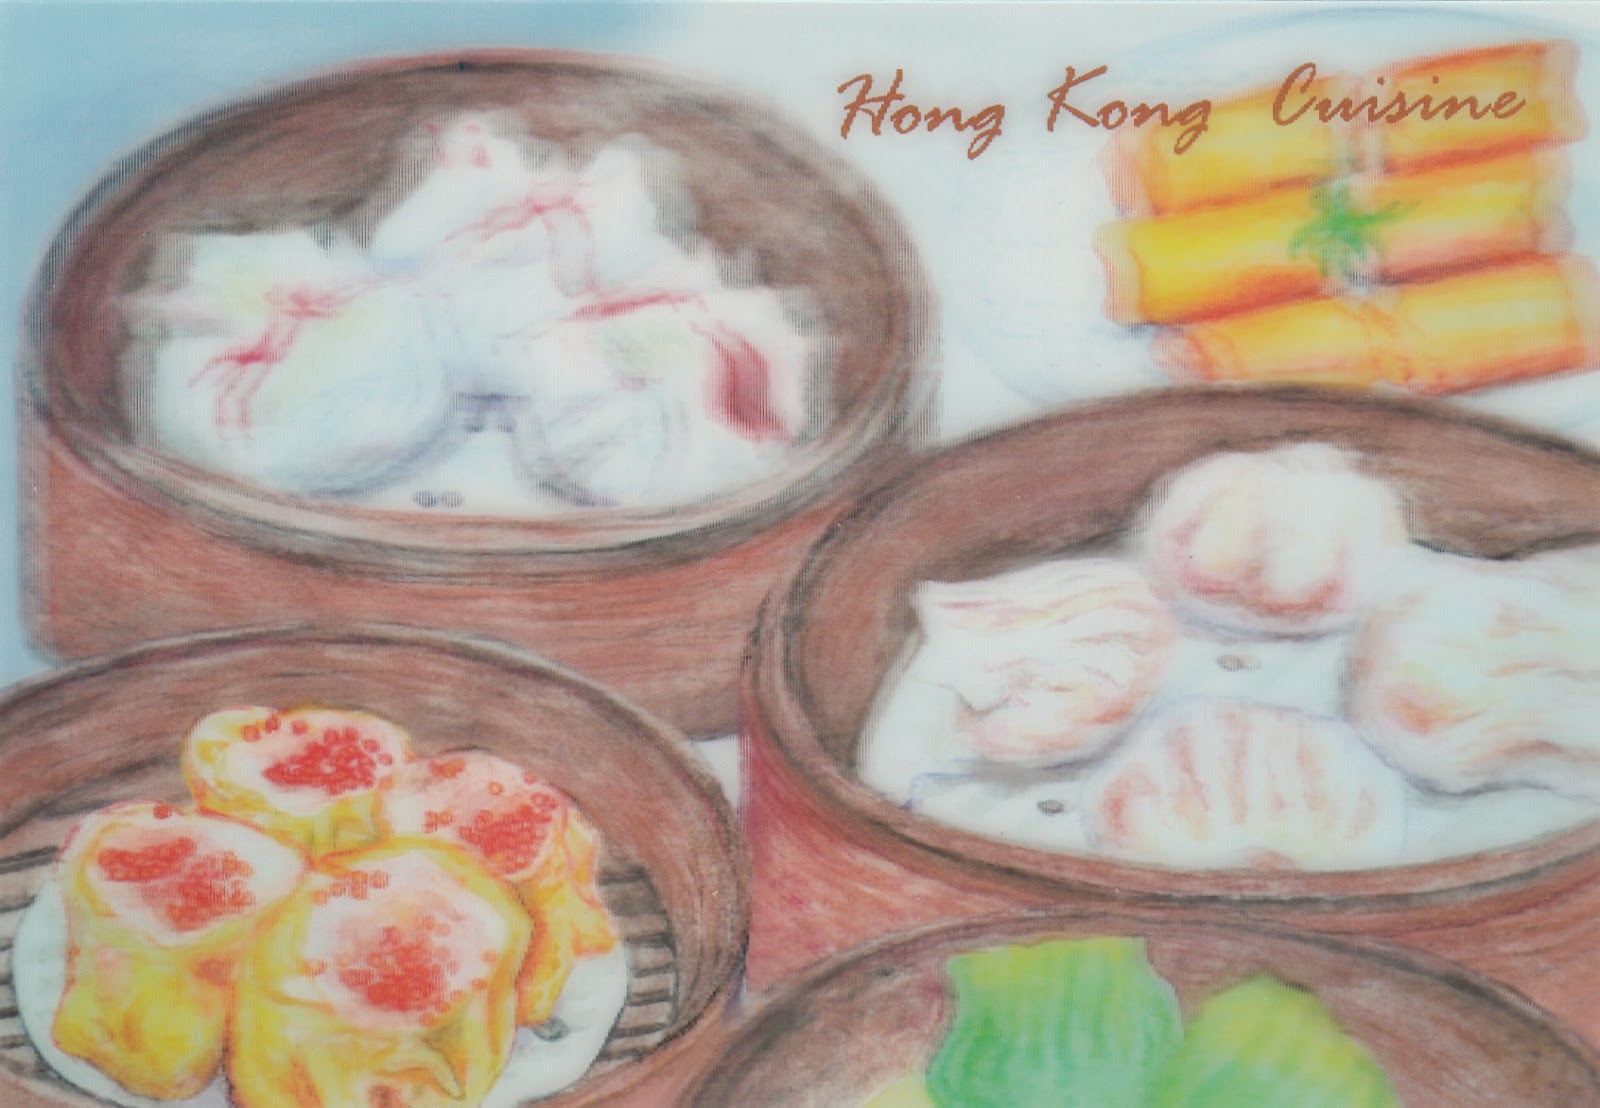 立體香港小食明信片